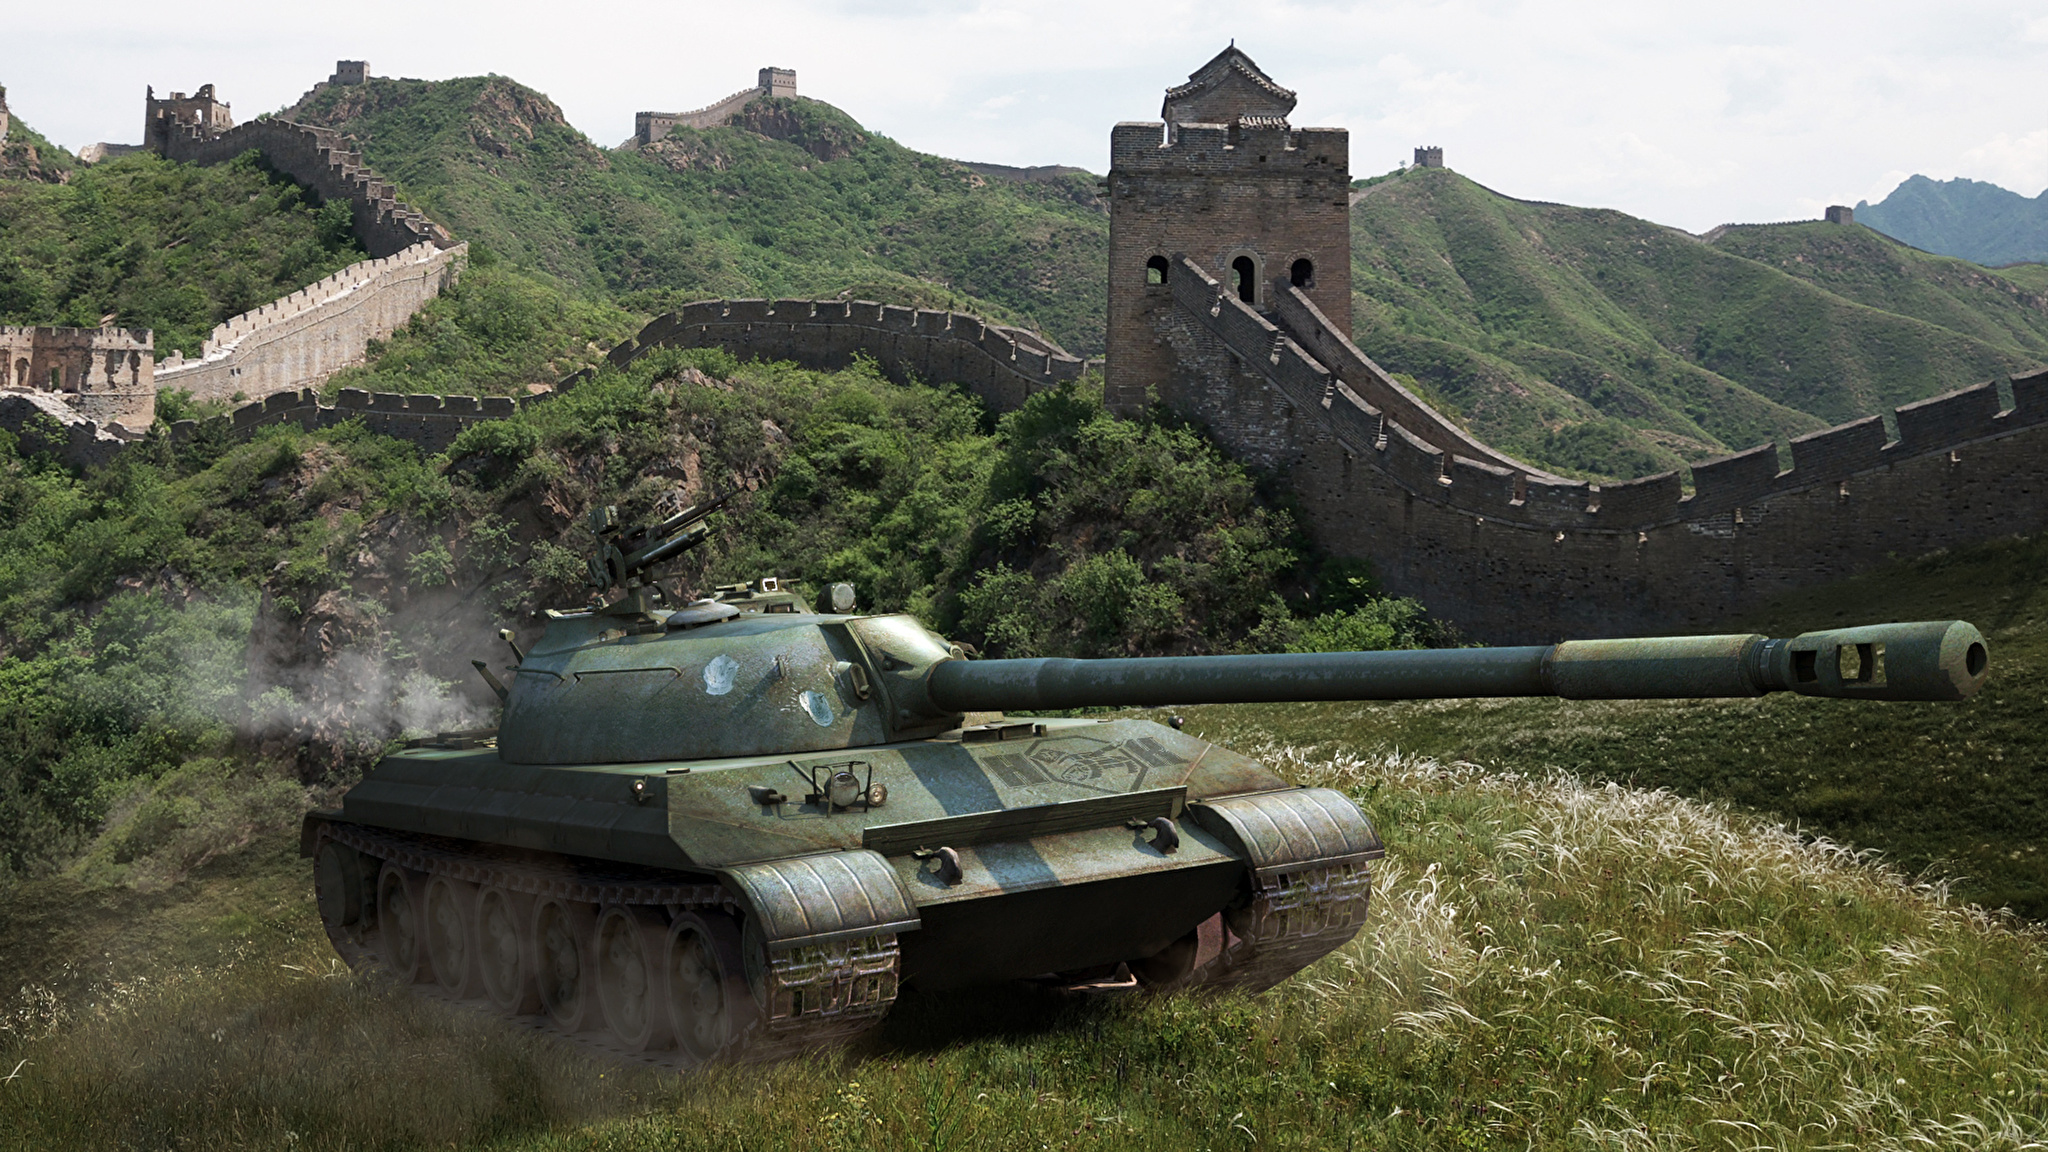 Фото wot. Танки ворлд оф танк. Ворлд оф танк в Китае. Китайские танки WOT. Фото танков.